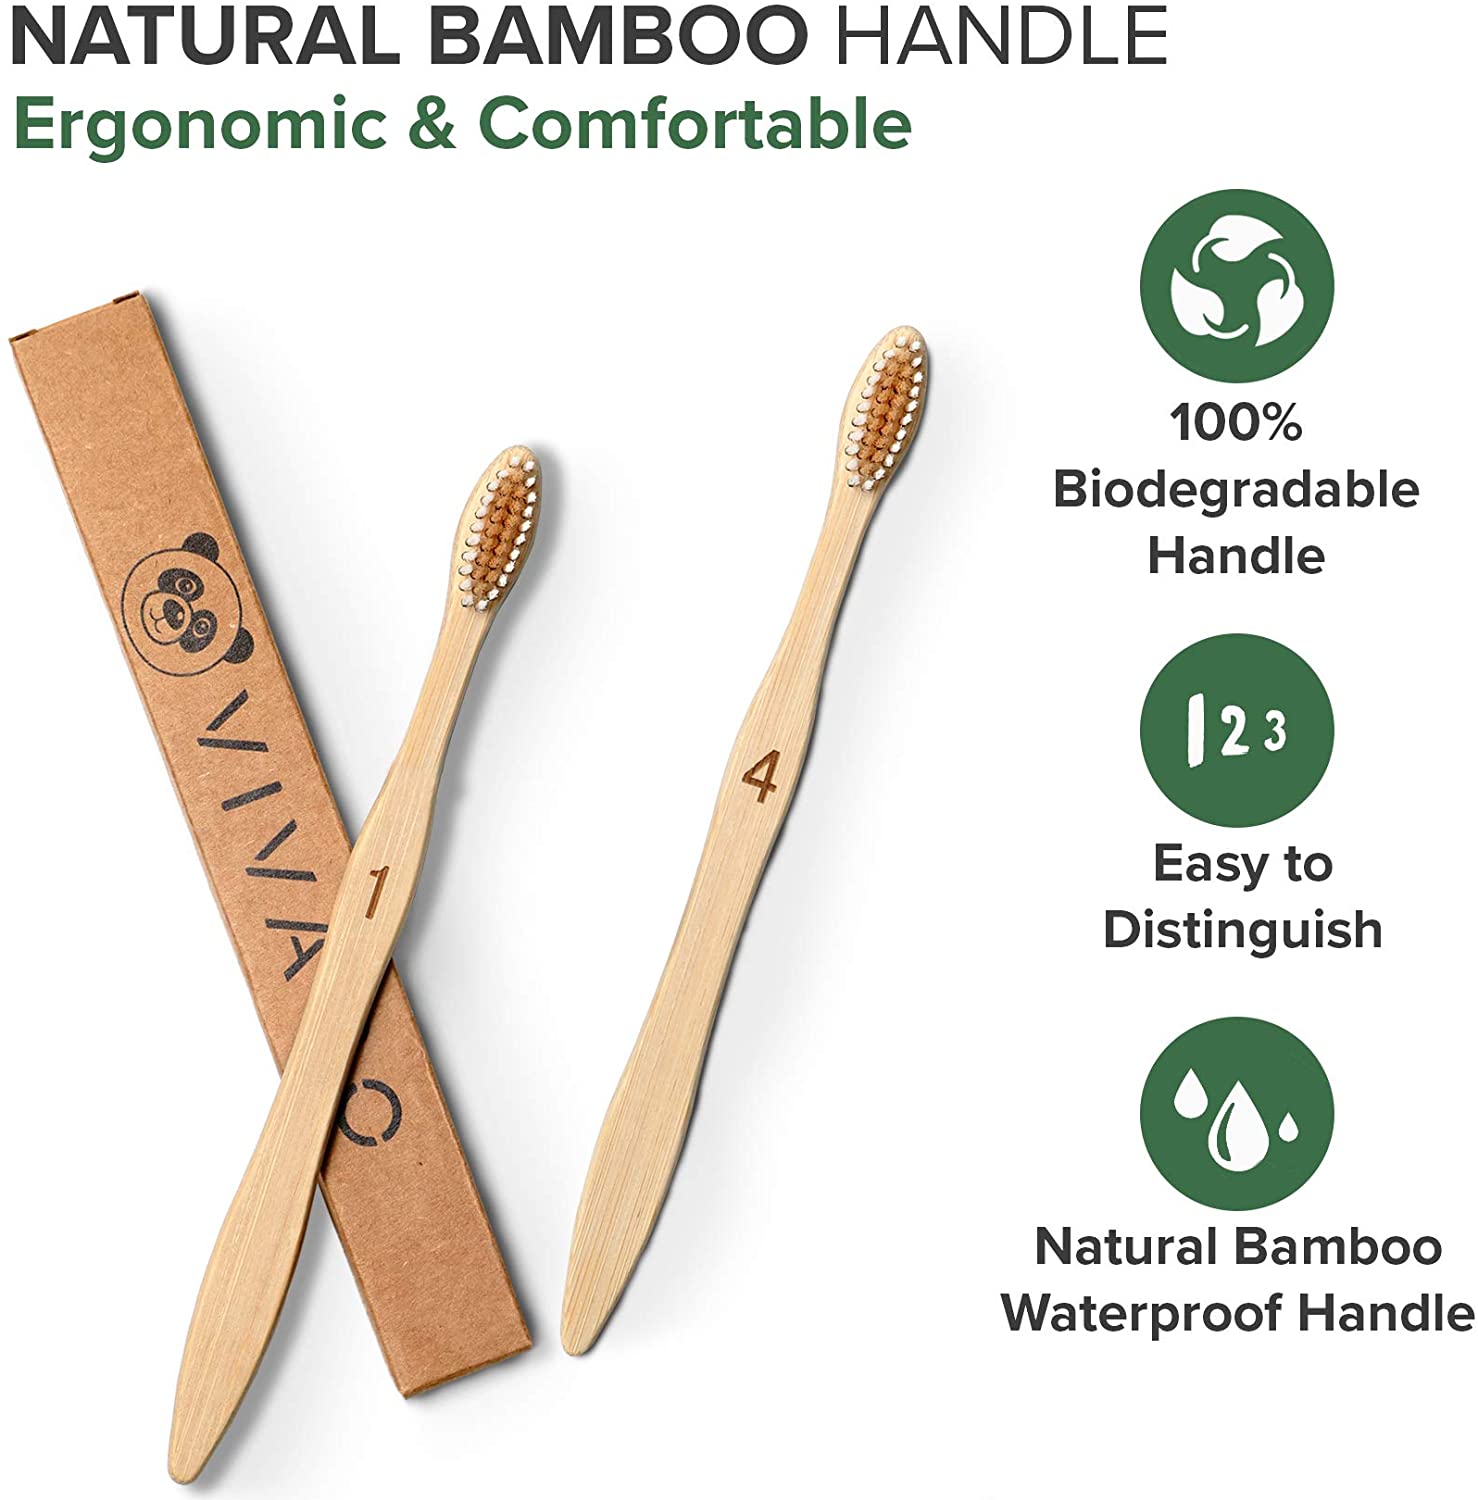 可生物降解竹牙刷 10 包 - 不含 BPA 的软毛牙刷，环保、可堆肥的天然木制牙刷